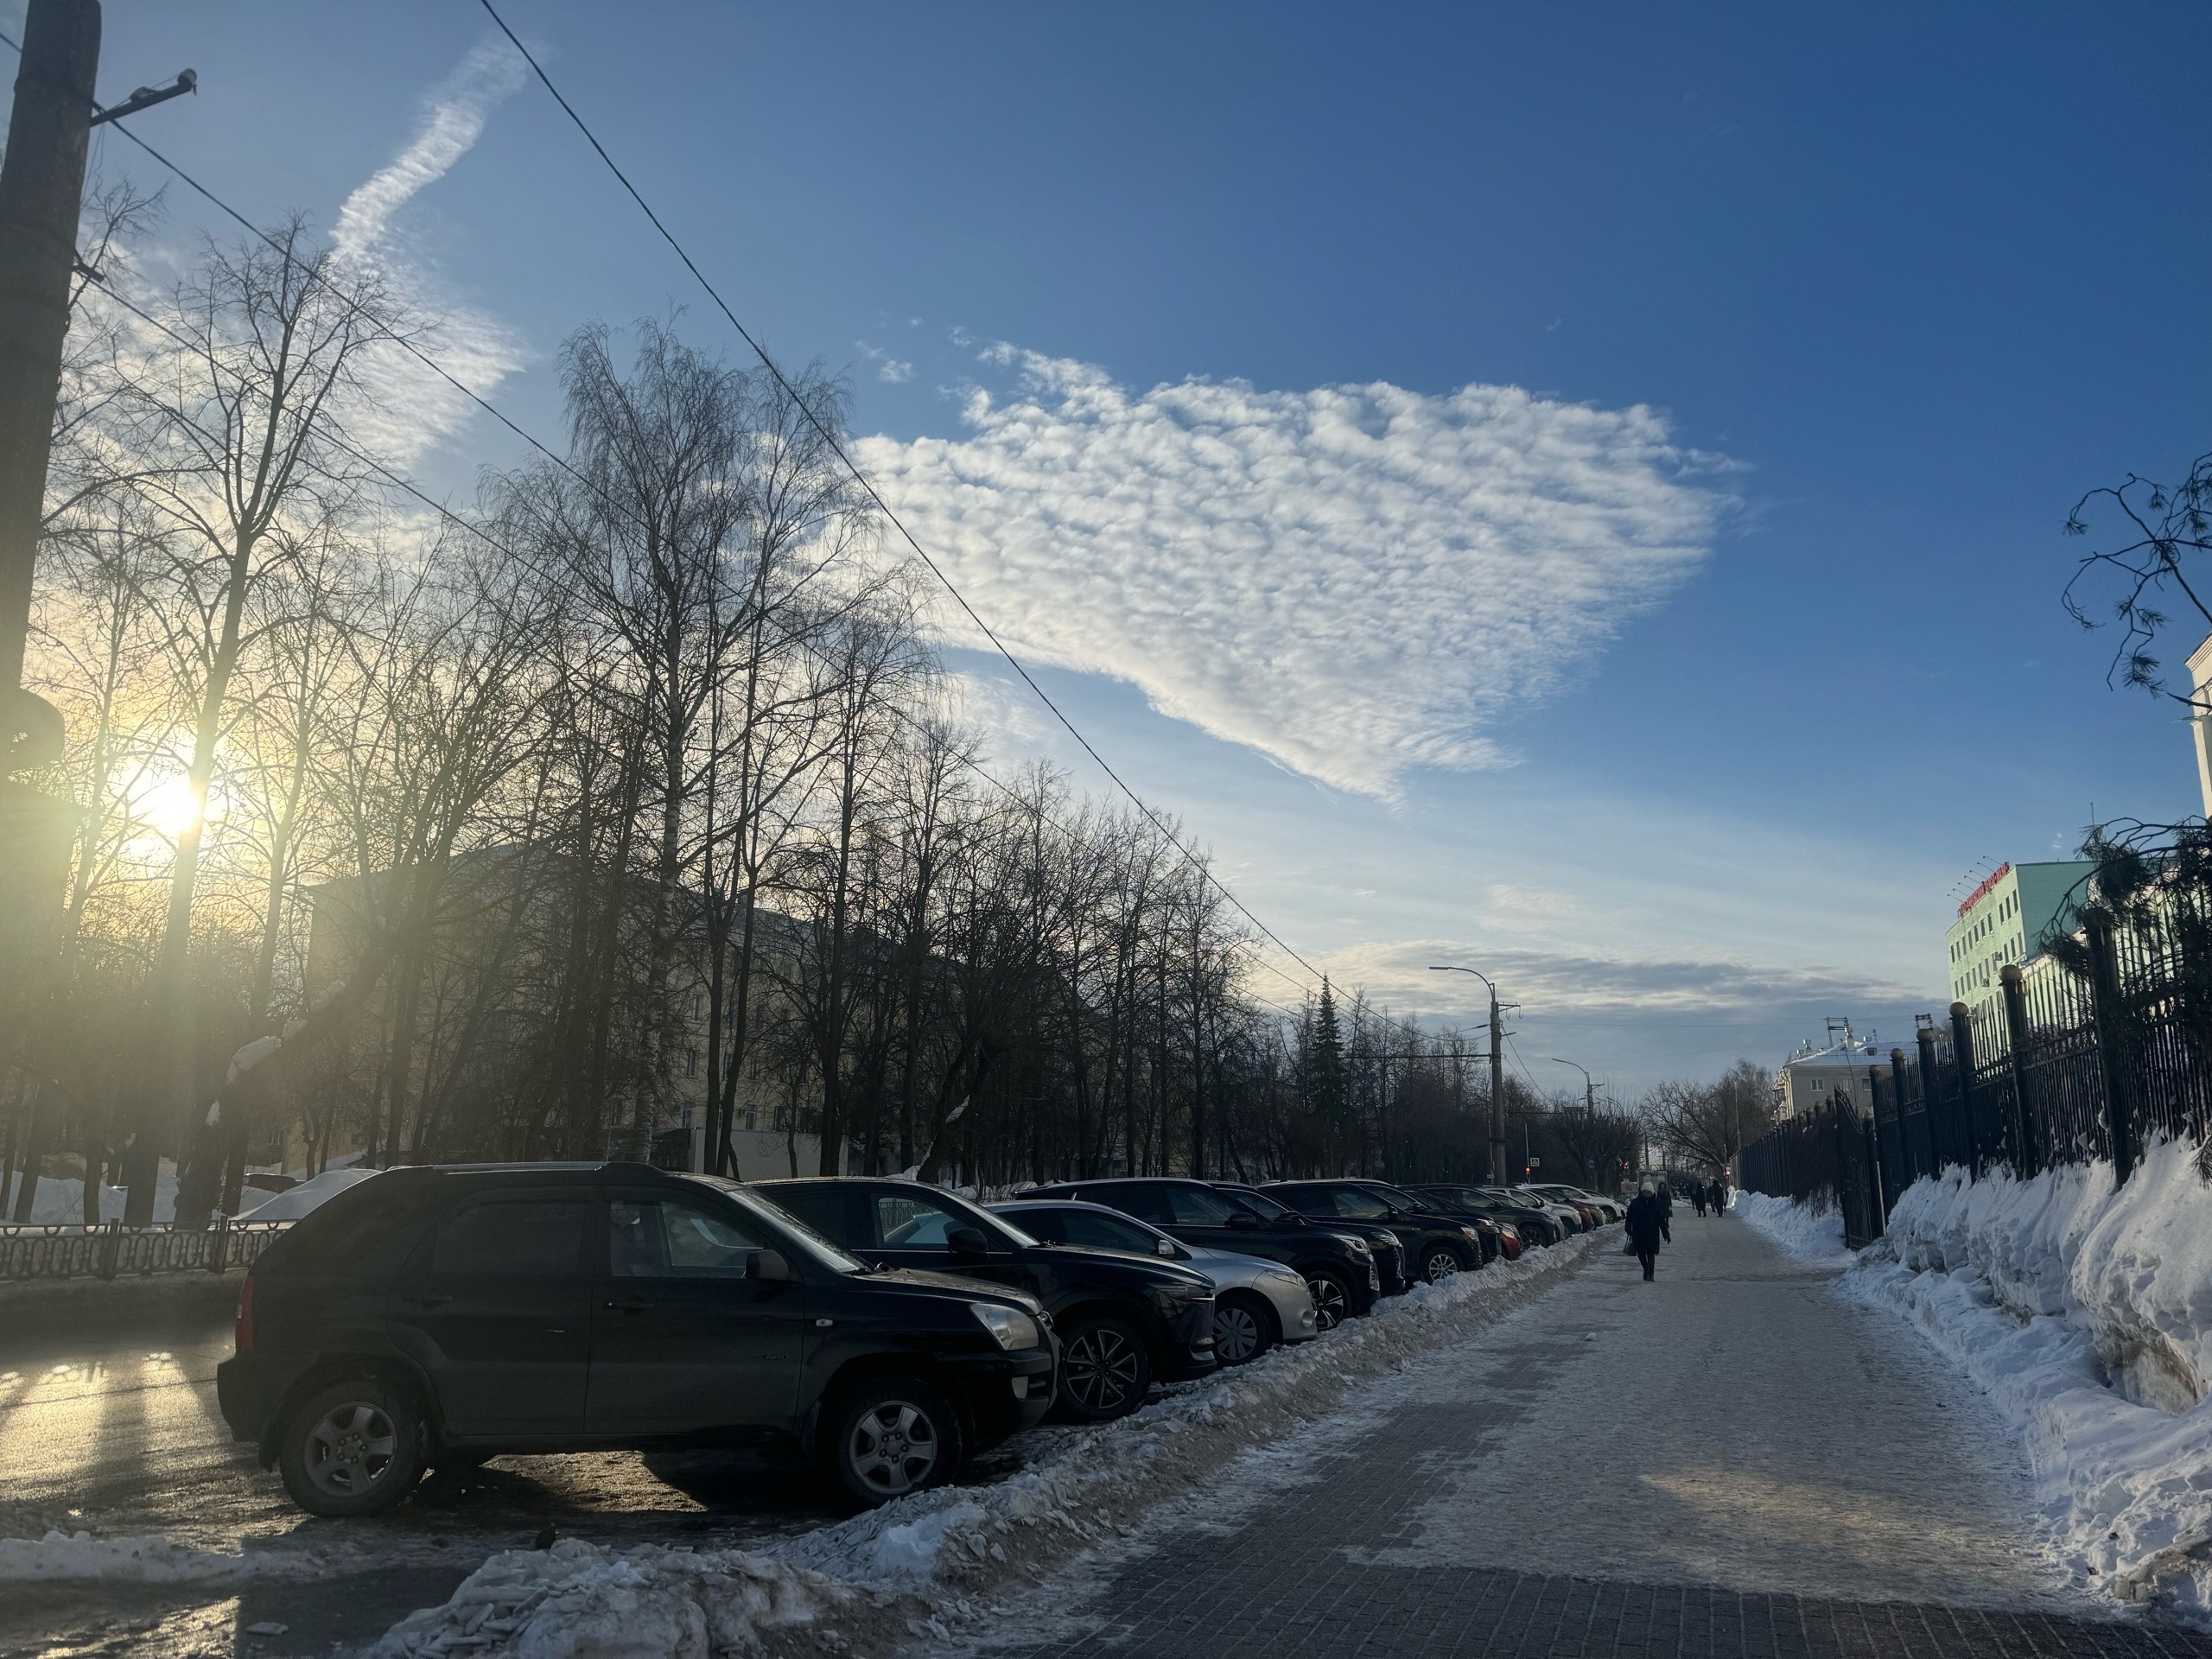 Гололедица на дорогах и до минус четырех: какой будет погода в Кирове в понедельник, 4 марта